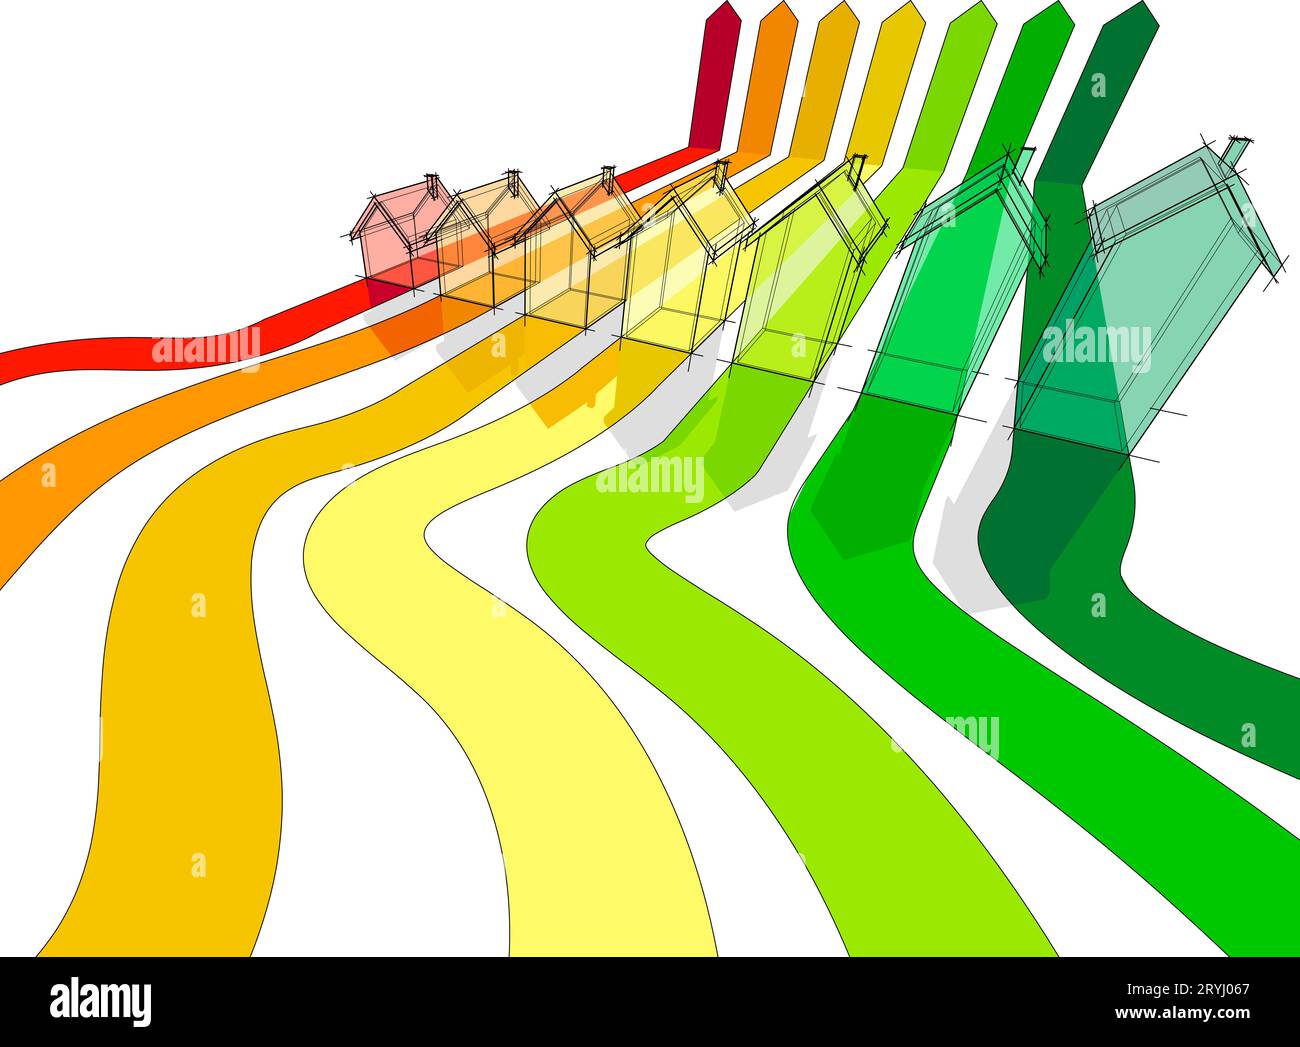 Sieben Häuser im Energiediagramm Stockfoto